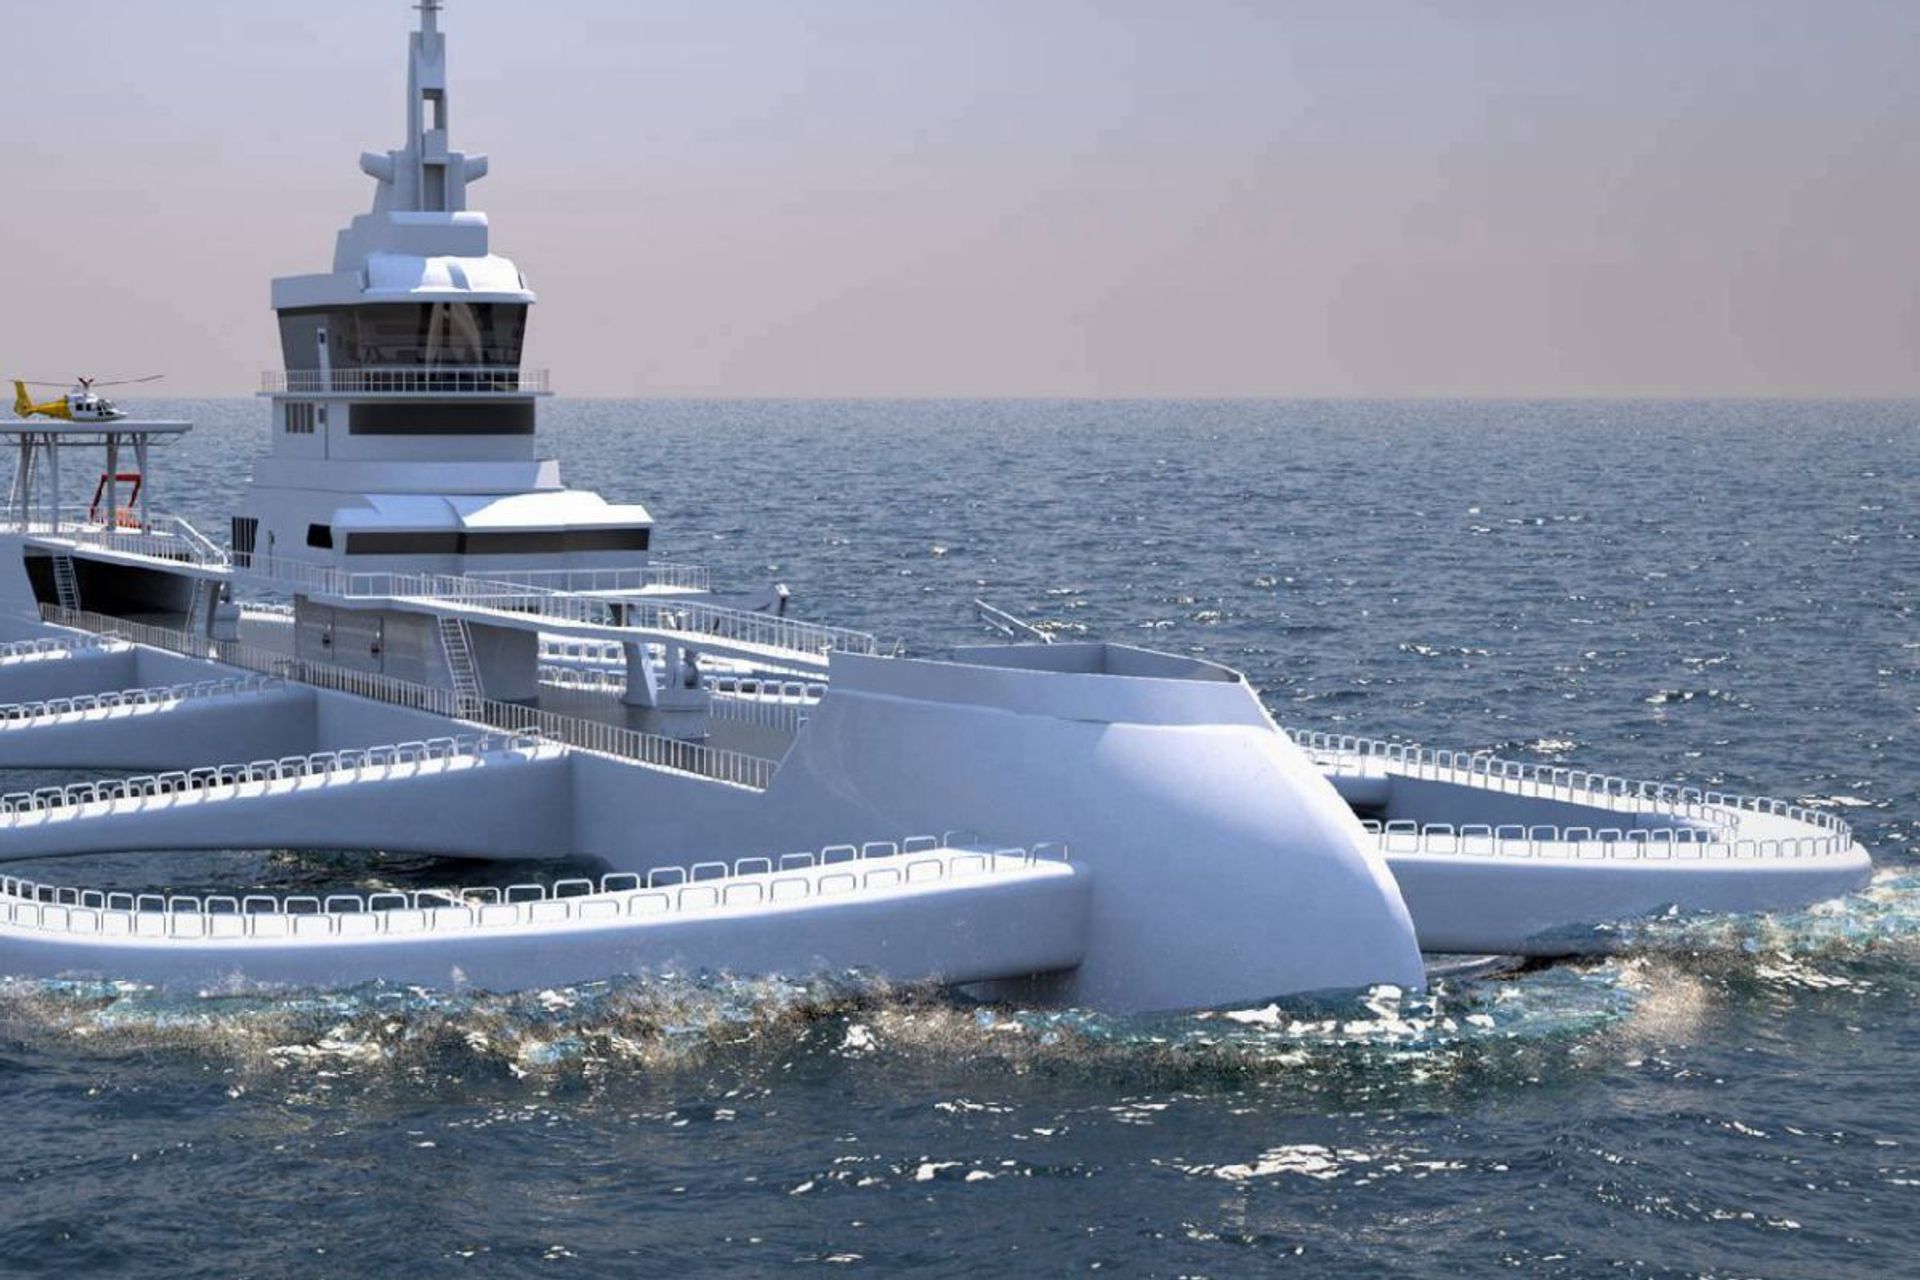 L’Ocean Ark è un trimarano a basse emissioni lungo 170 metri, assistito dall'intelligenza artificiale, progettato con recinti per pesce in rame autopulenti, capace di cercare le acque migliori